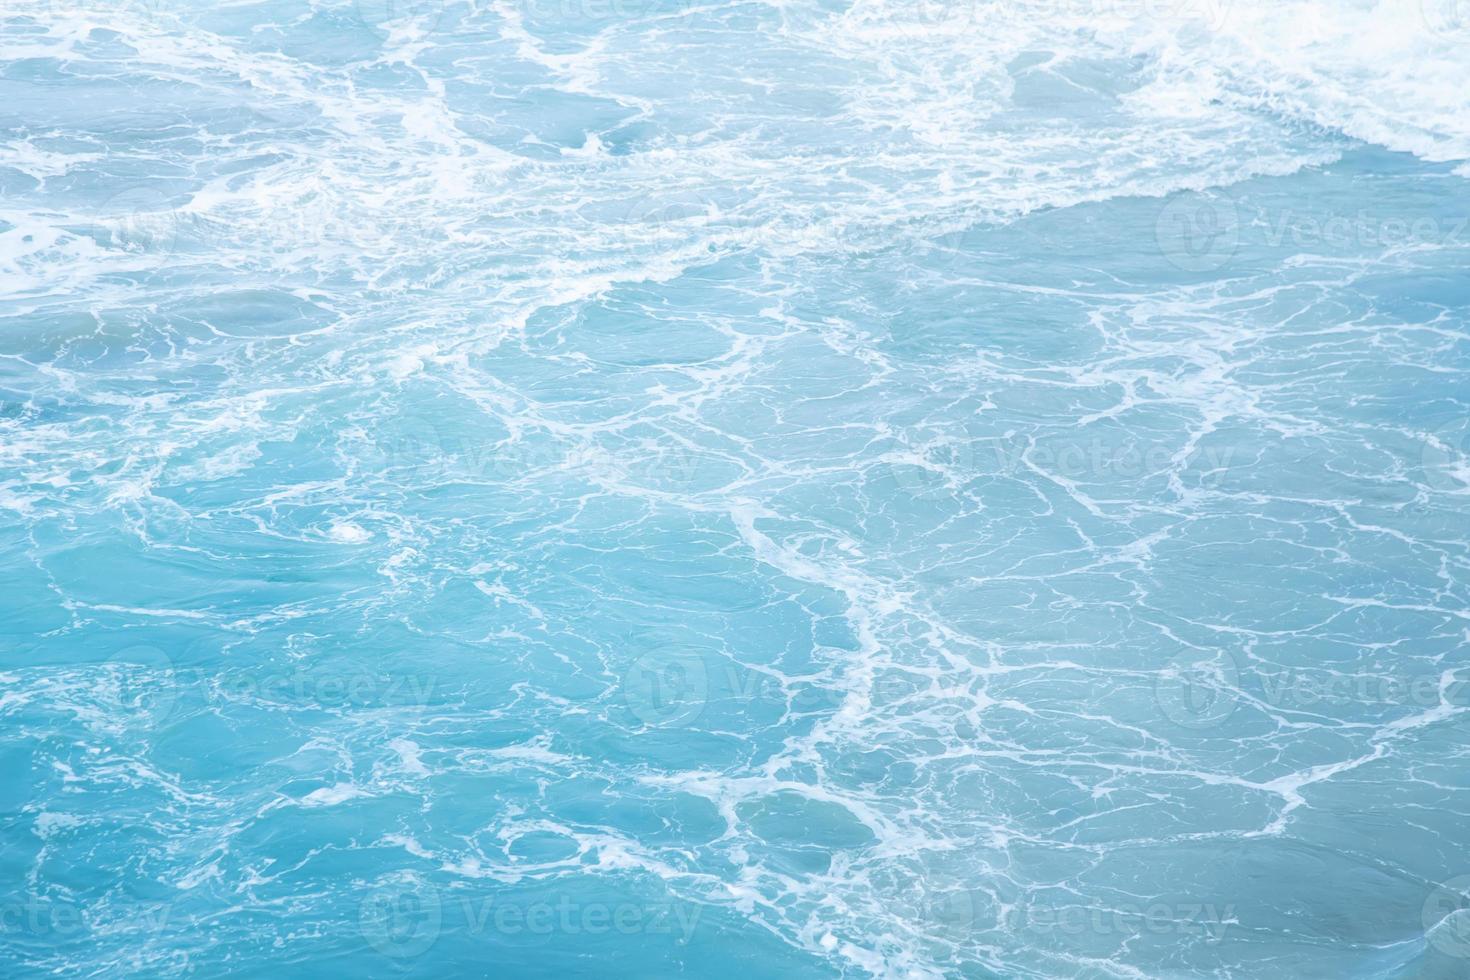 ondas do mar na onda do mar espirrando água da ondulação. fundo de água azul. deixe espaço para escrever um texto descritivo. foto